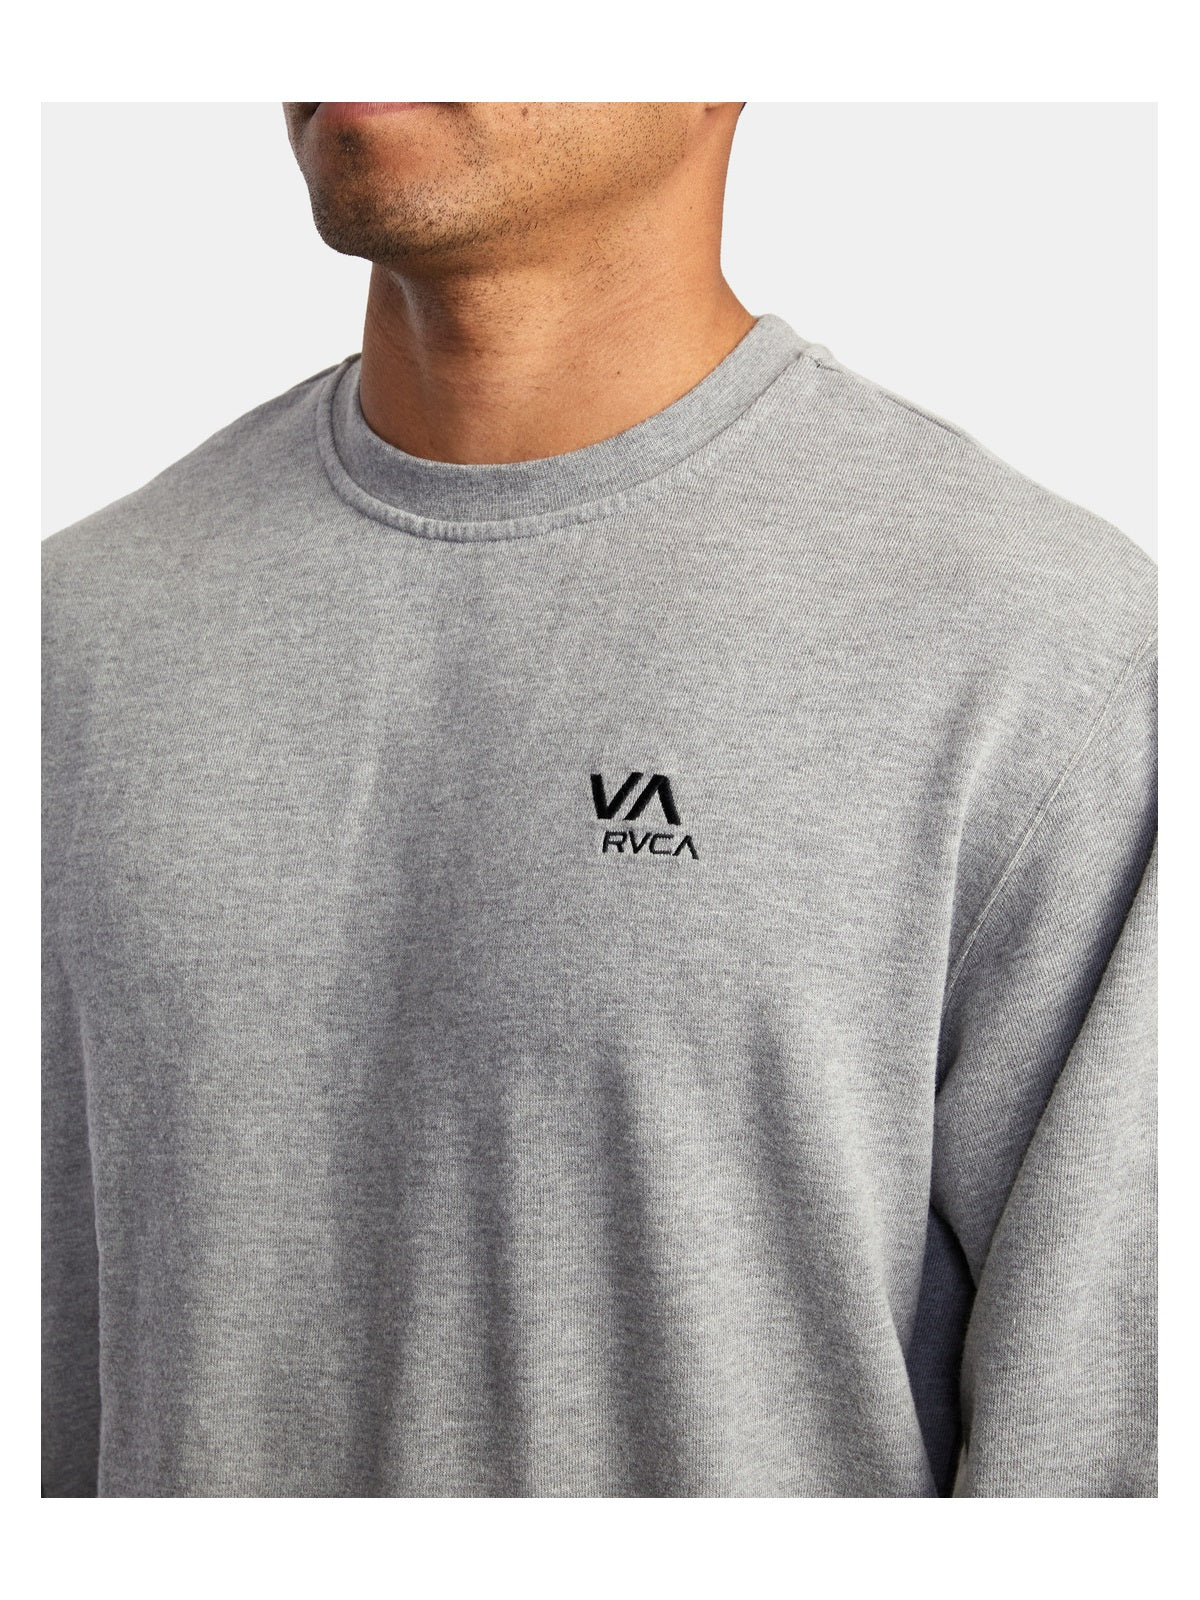 Bluza RVCA Va Essential Sweatshirt niebieski